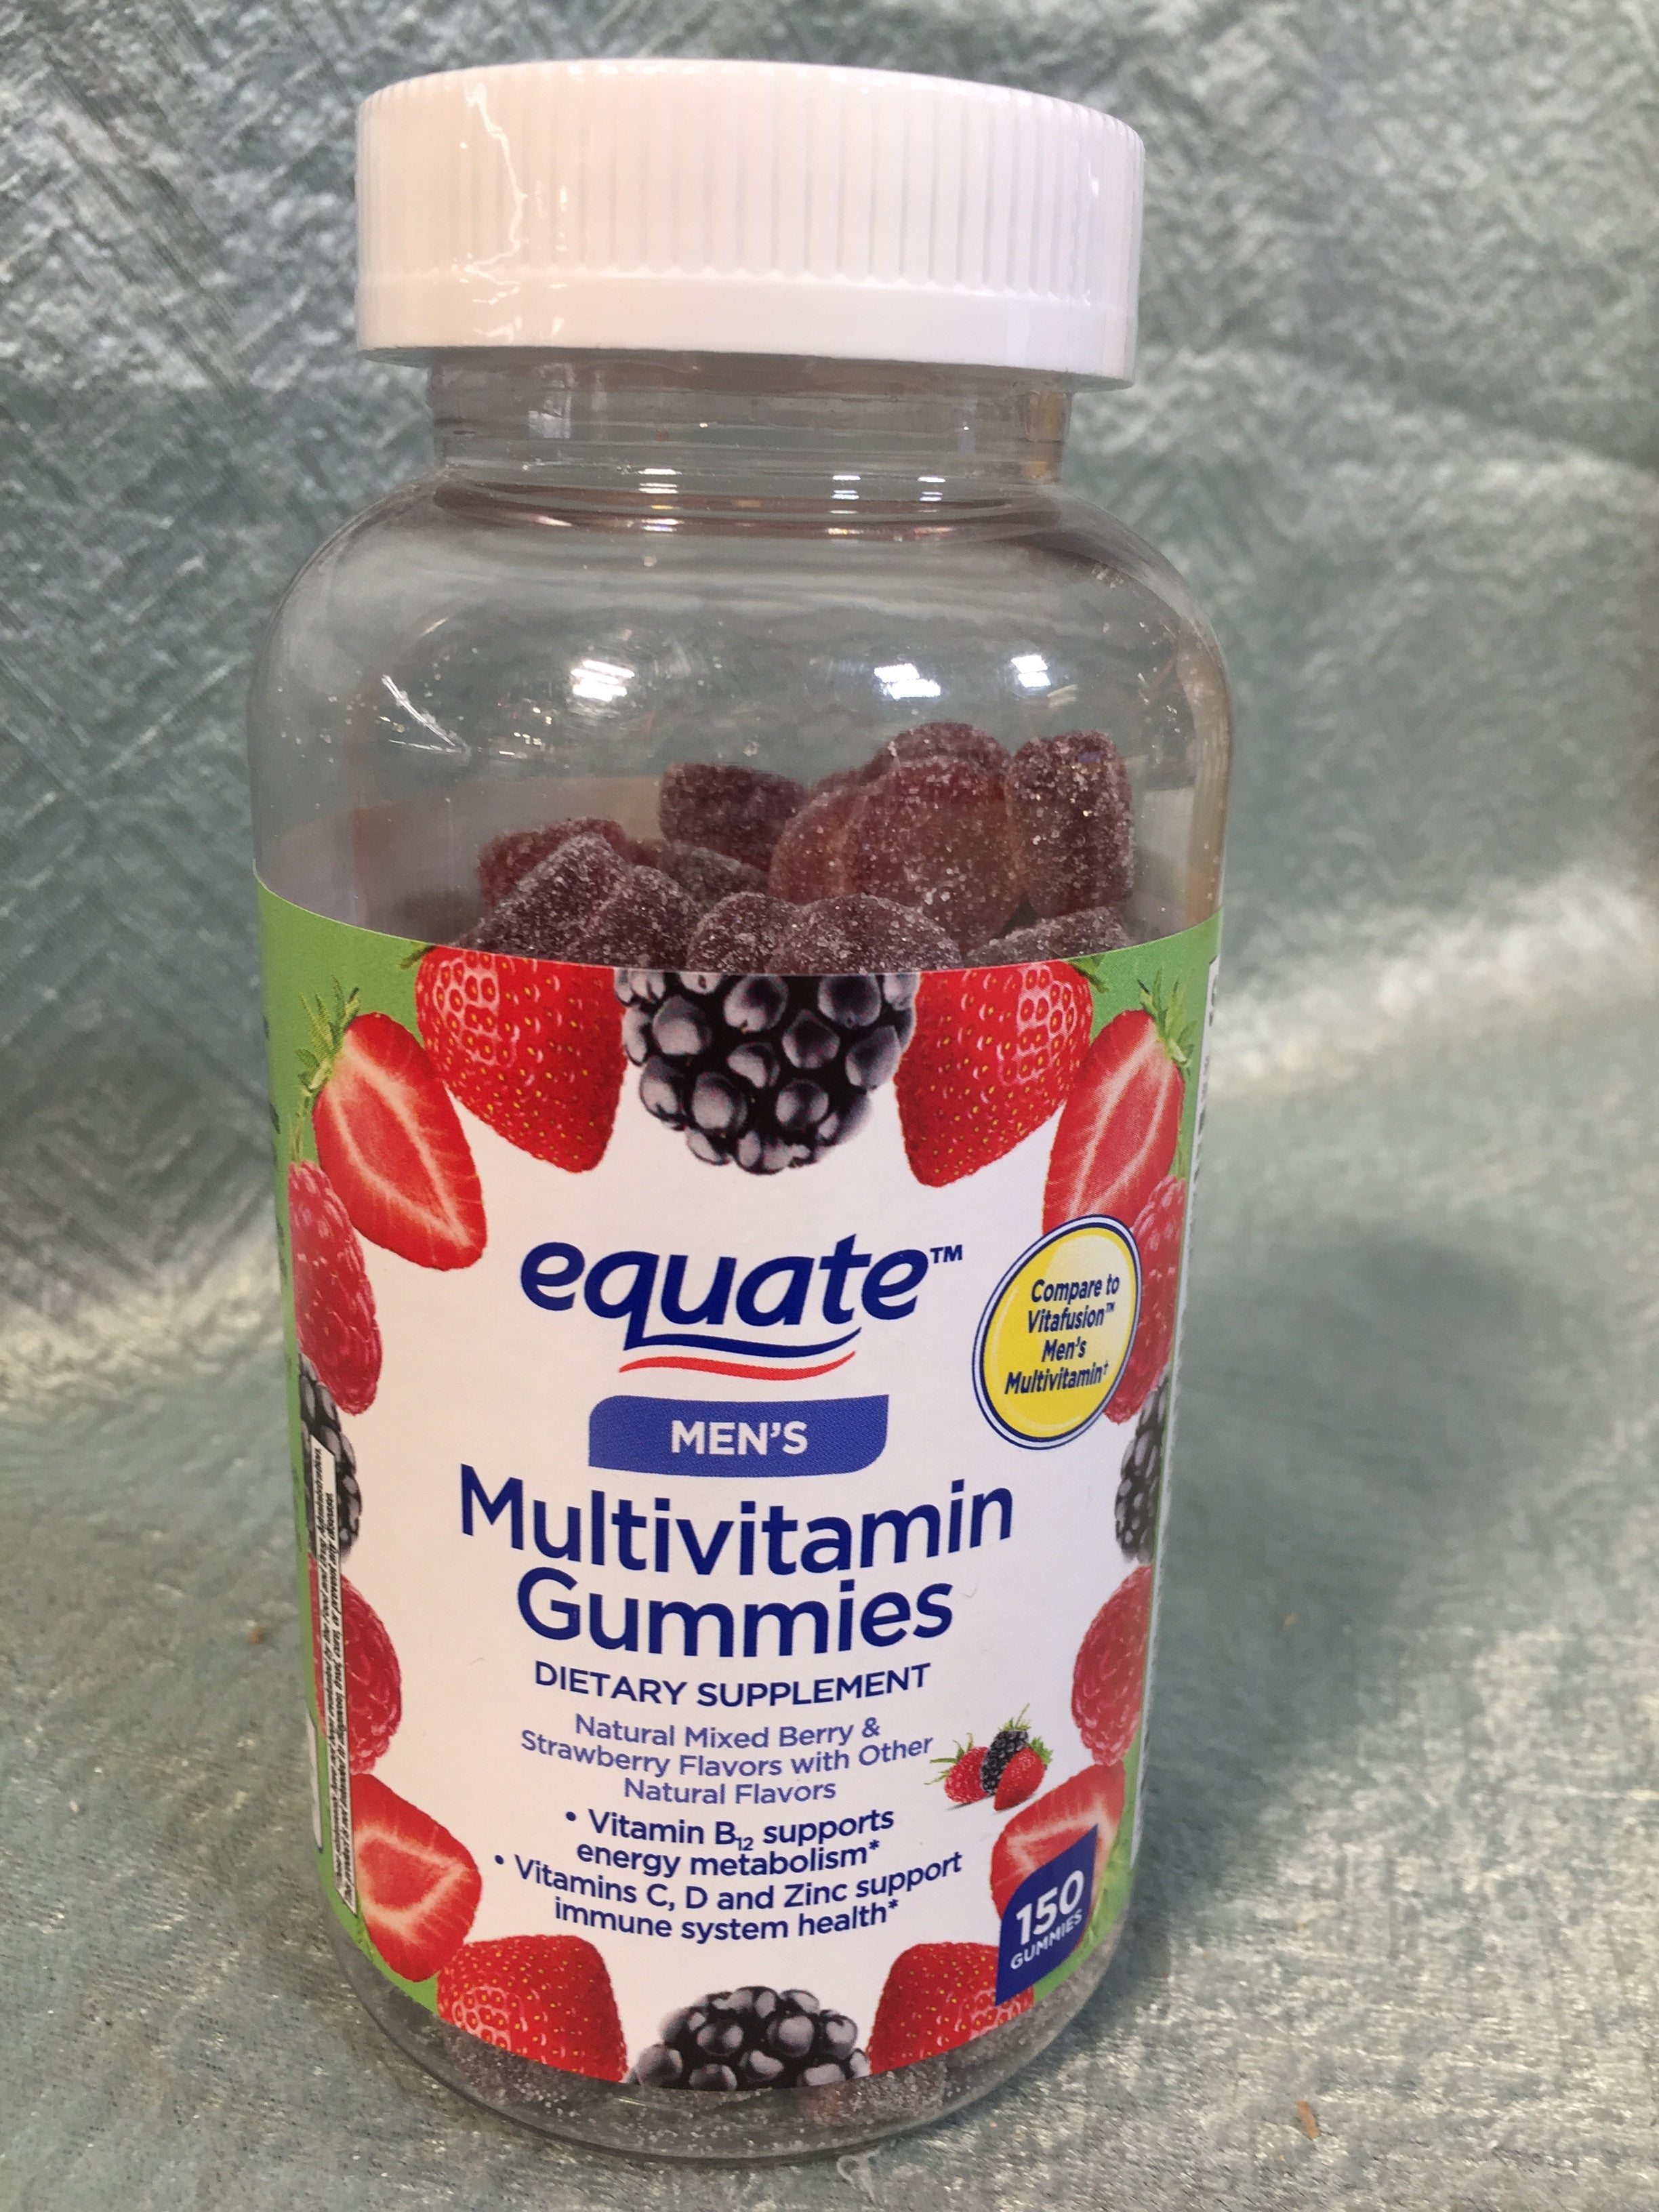 Equate Men's Multivitamin Gummies - 150 Gummies - Expires 12/2022 (7593032843502)